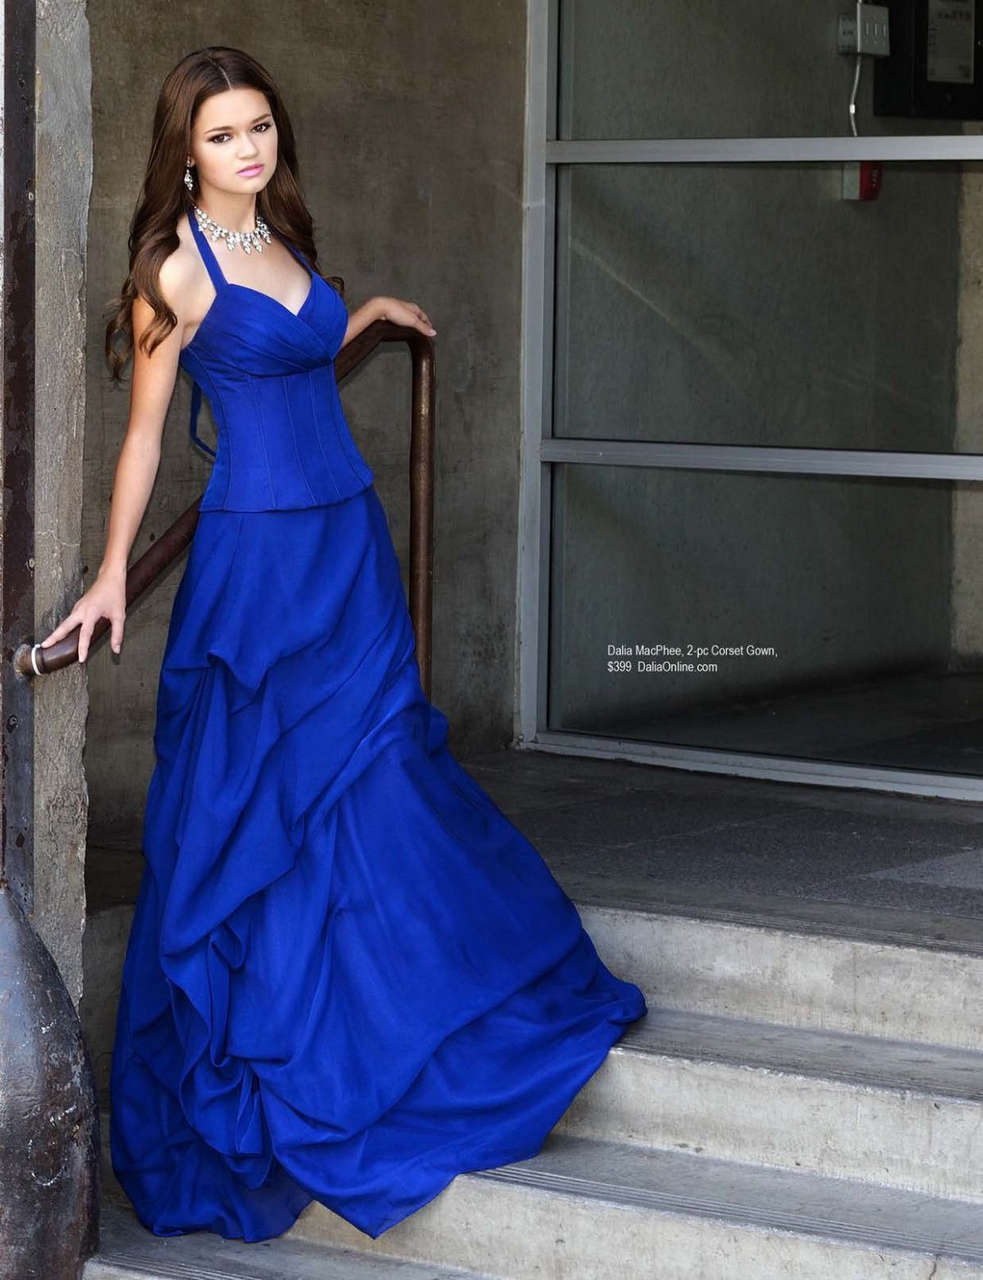 Ciara Bravo Regard Magazine October 2014 Issue